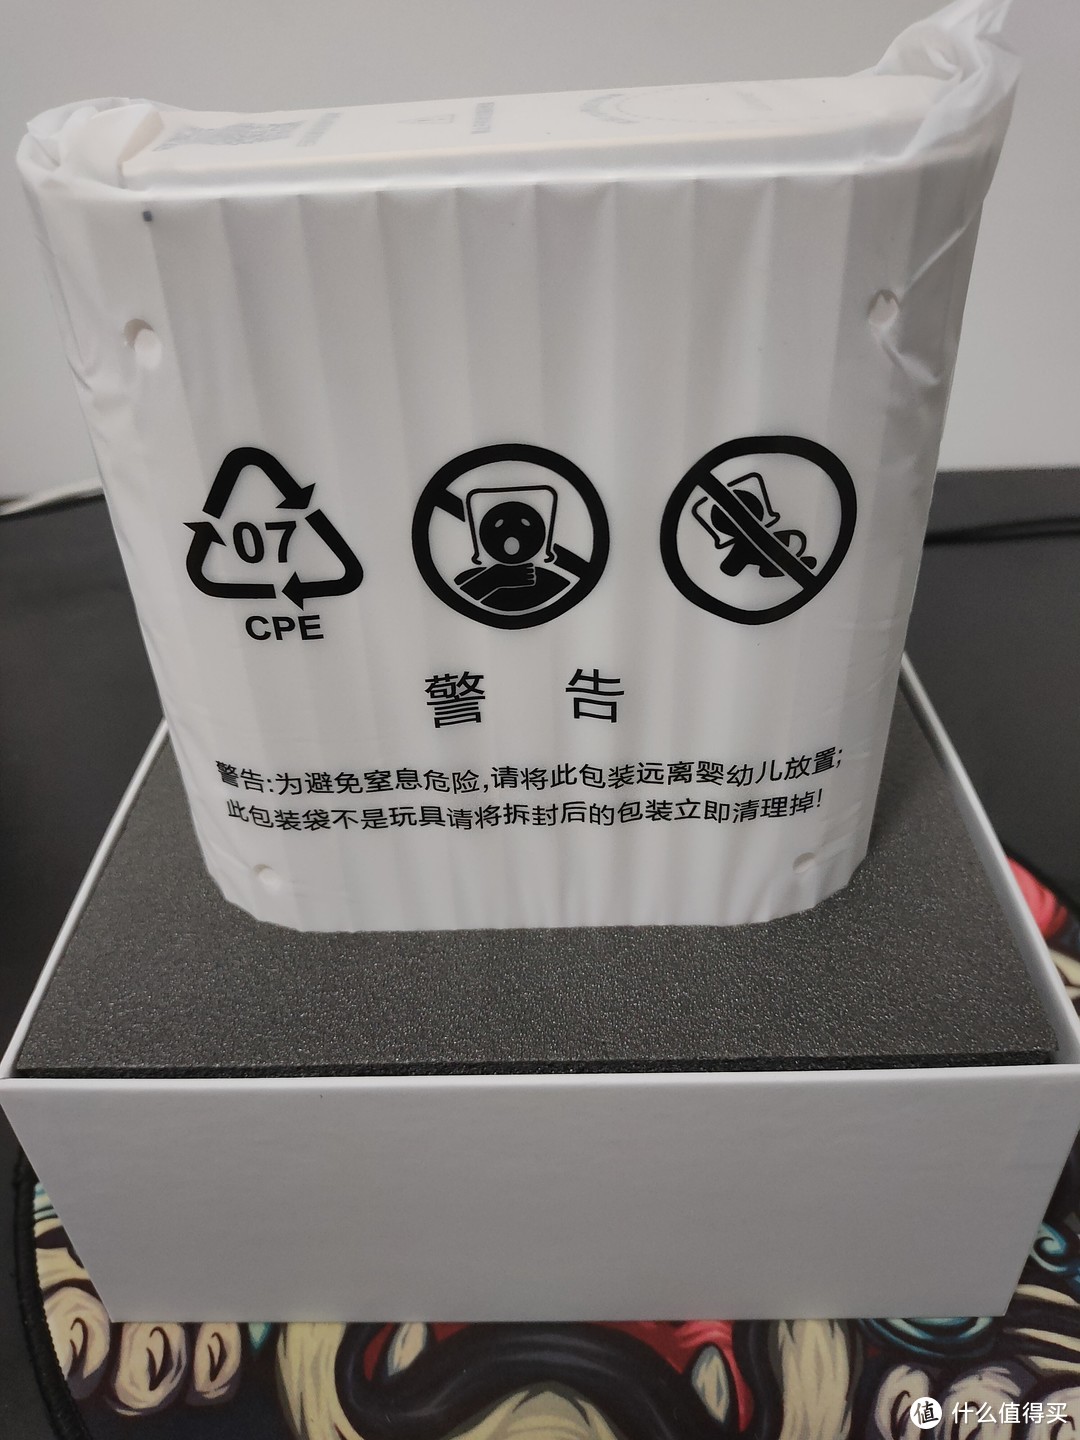 打开包装盒，被塑料袋包裹着的本体出现！警告信息引人注目。